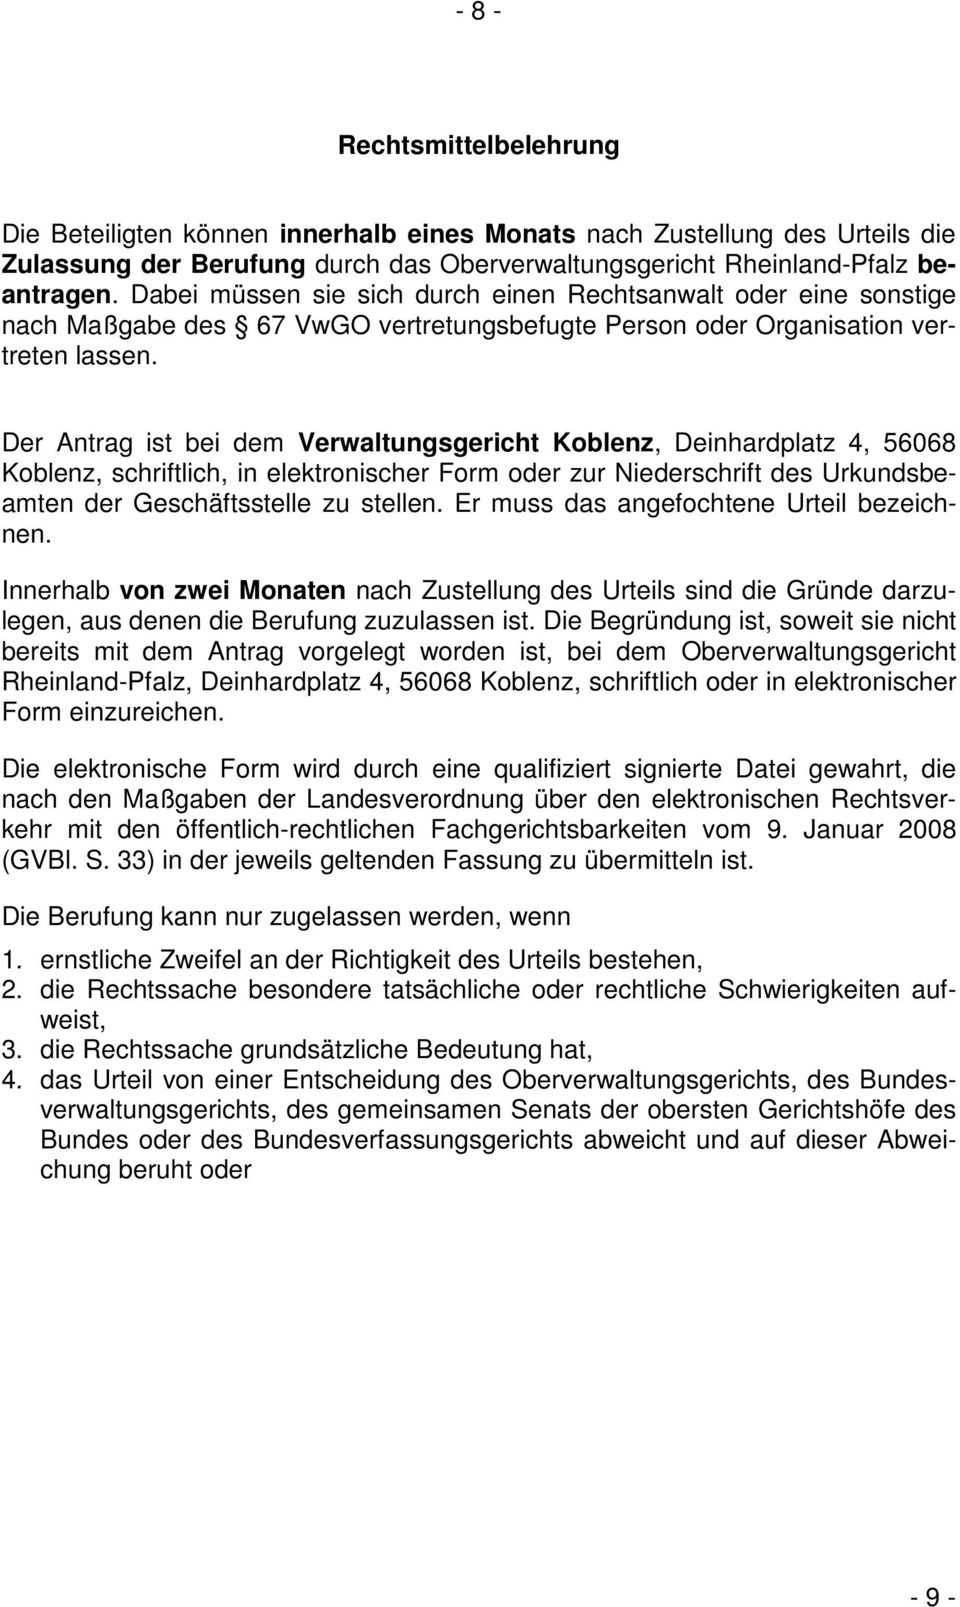 Der Antrag ist bei dem Verwaltungsgericht Koblenz, Deinhardplatz 4, 56068 Koblenz, schriftlich, in elektronischer Form oder zur Niederschrift des Urkundsbeamten der Geschäftsstelle zu stellen.